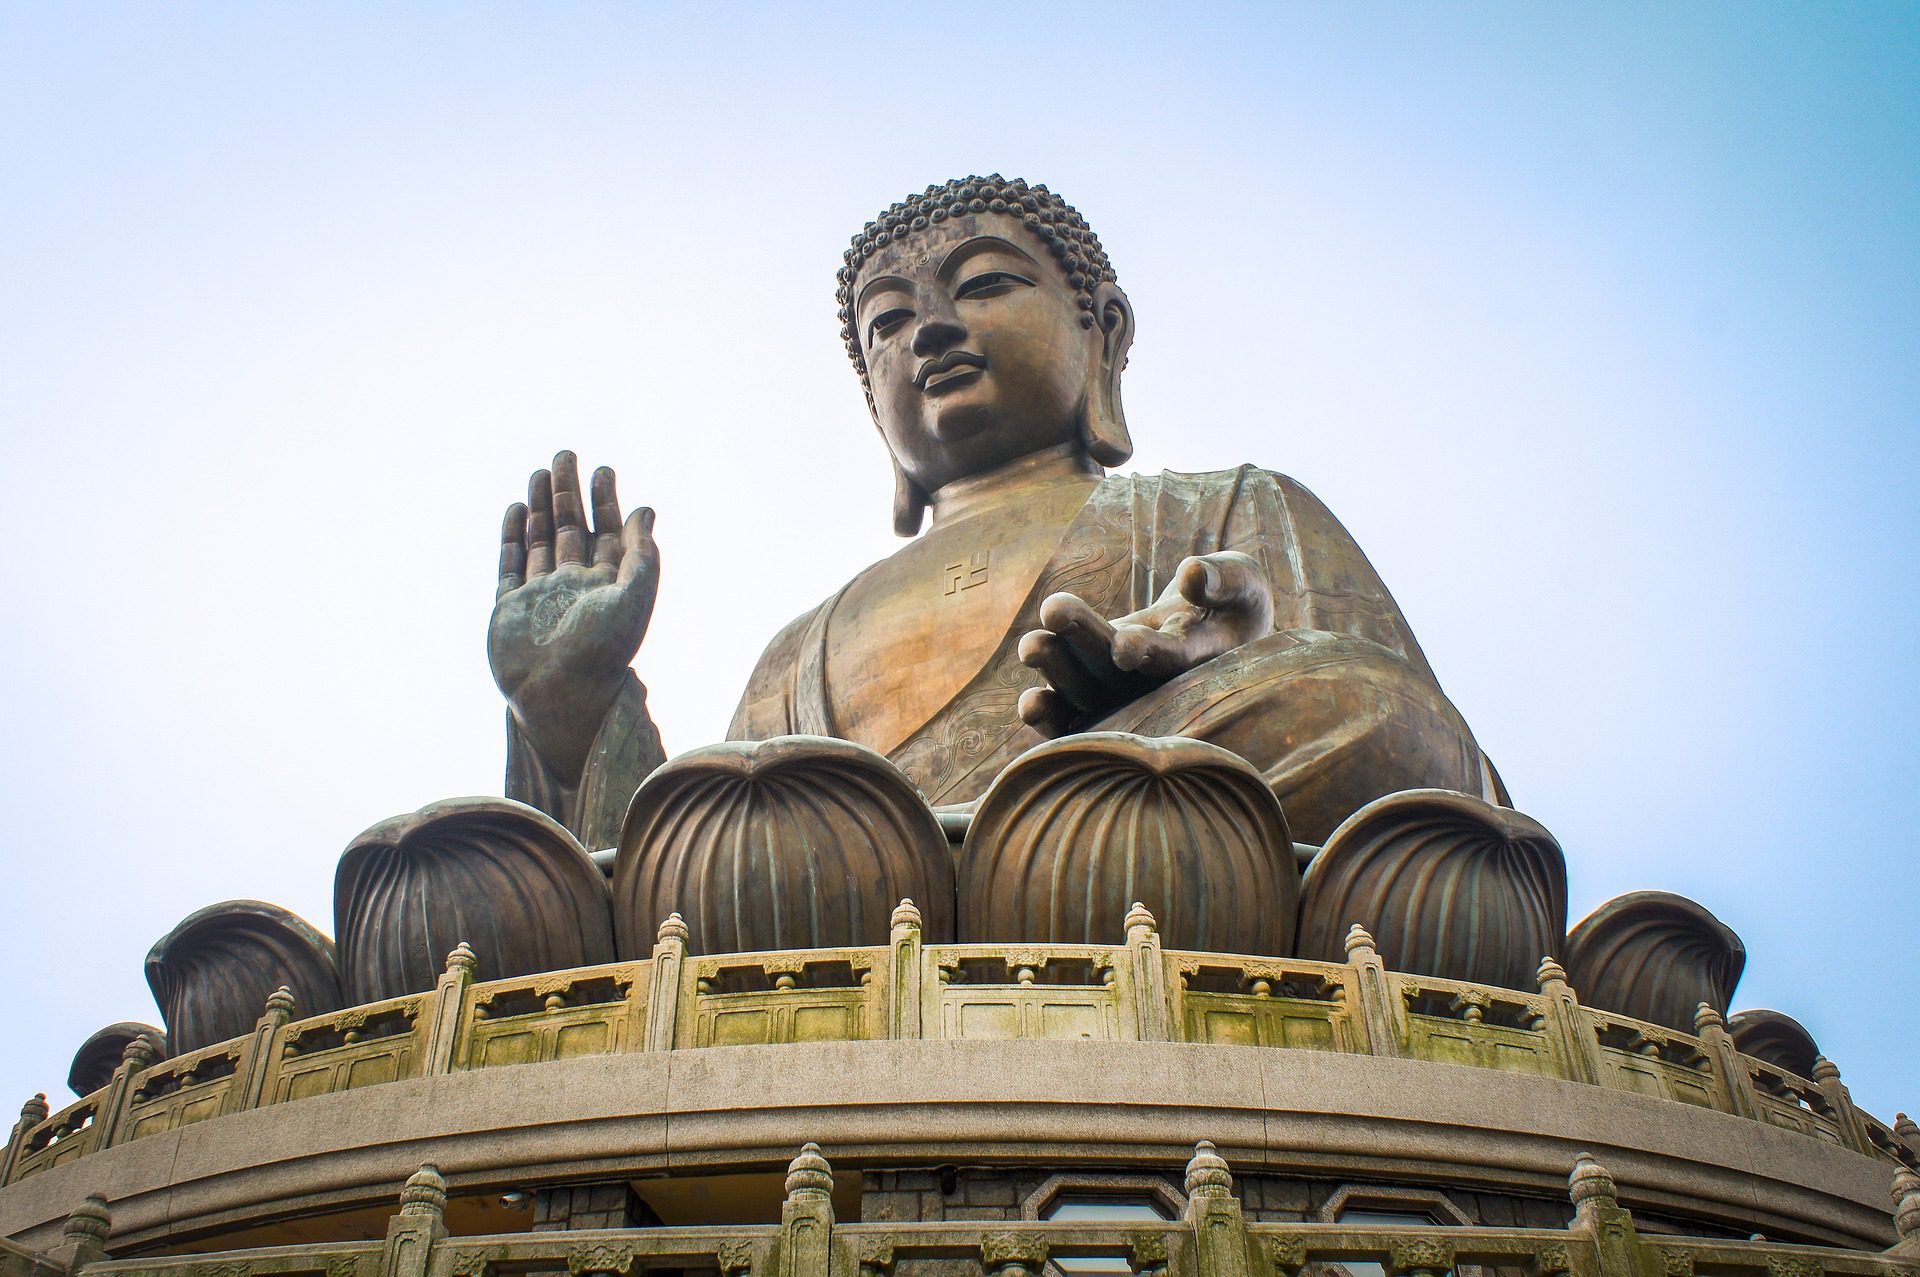 Big Buddha, Lantau Island